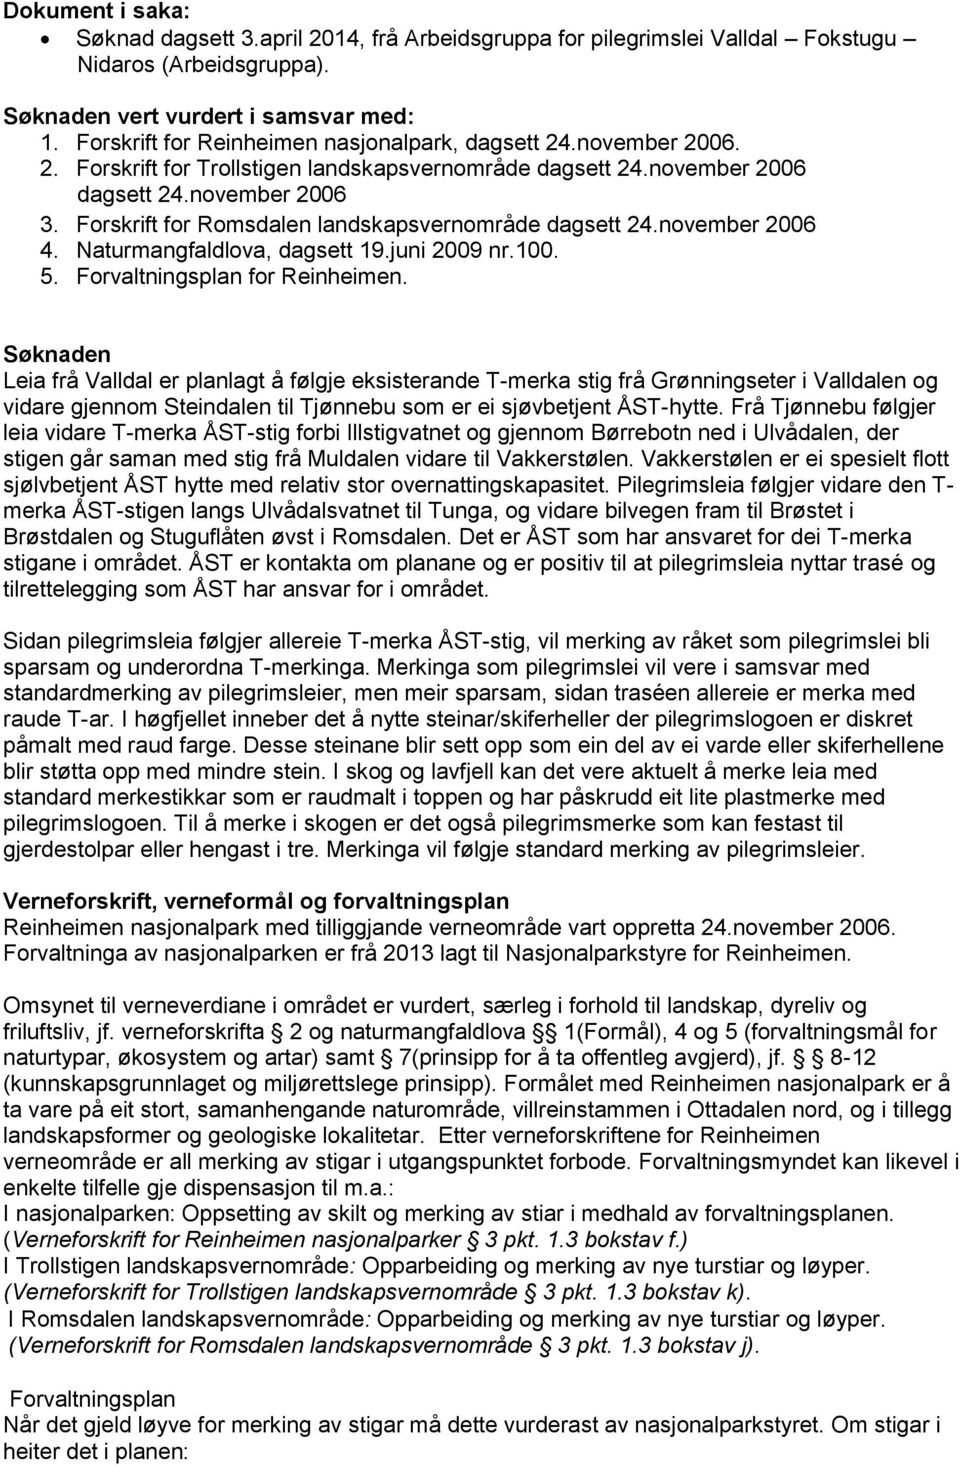 Forskrift for Romsdalen landskapsvernområde dagsett 24.november 2006 4. Naturmangfaldlova, dagsett 19.juni 2009 nr.100. 5. Forvaltningsplan for Reinheimen.